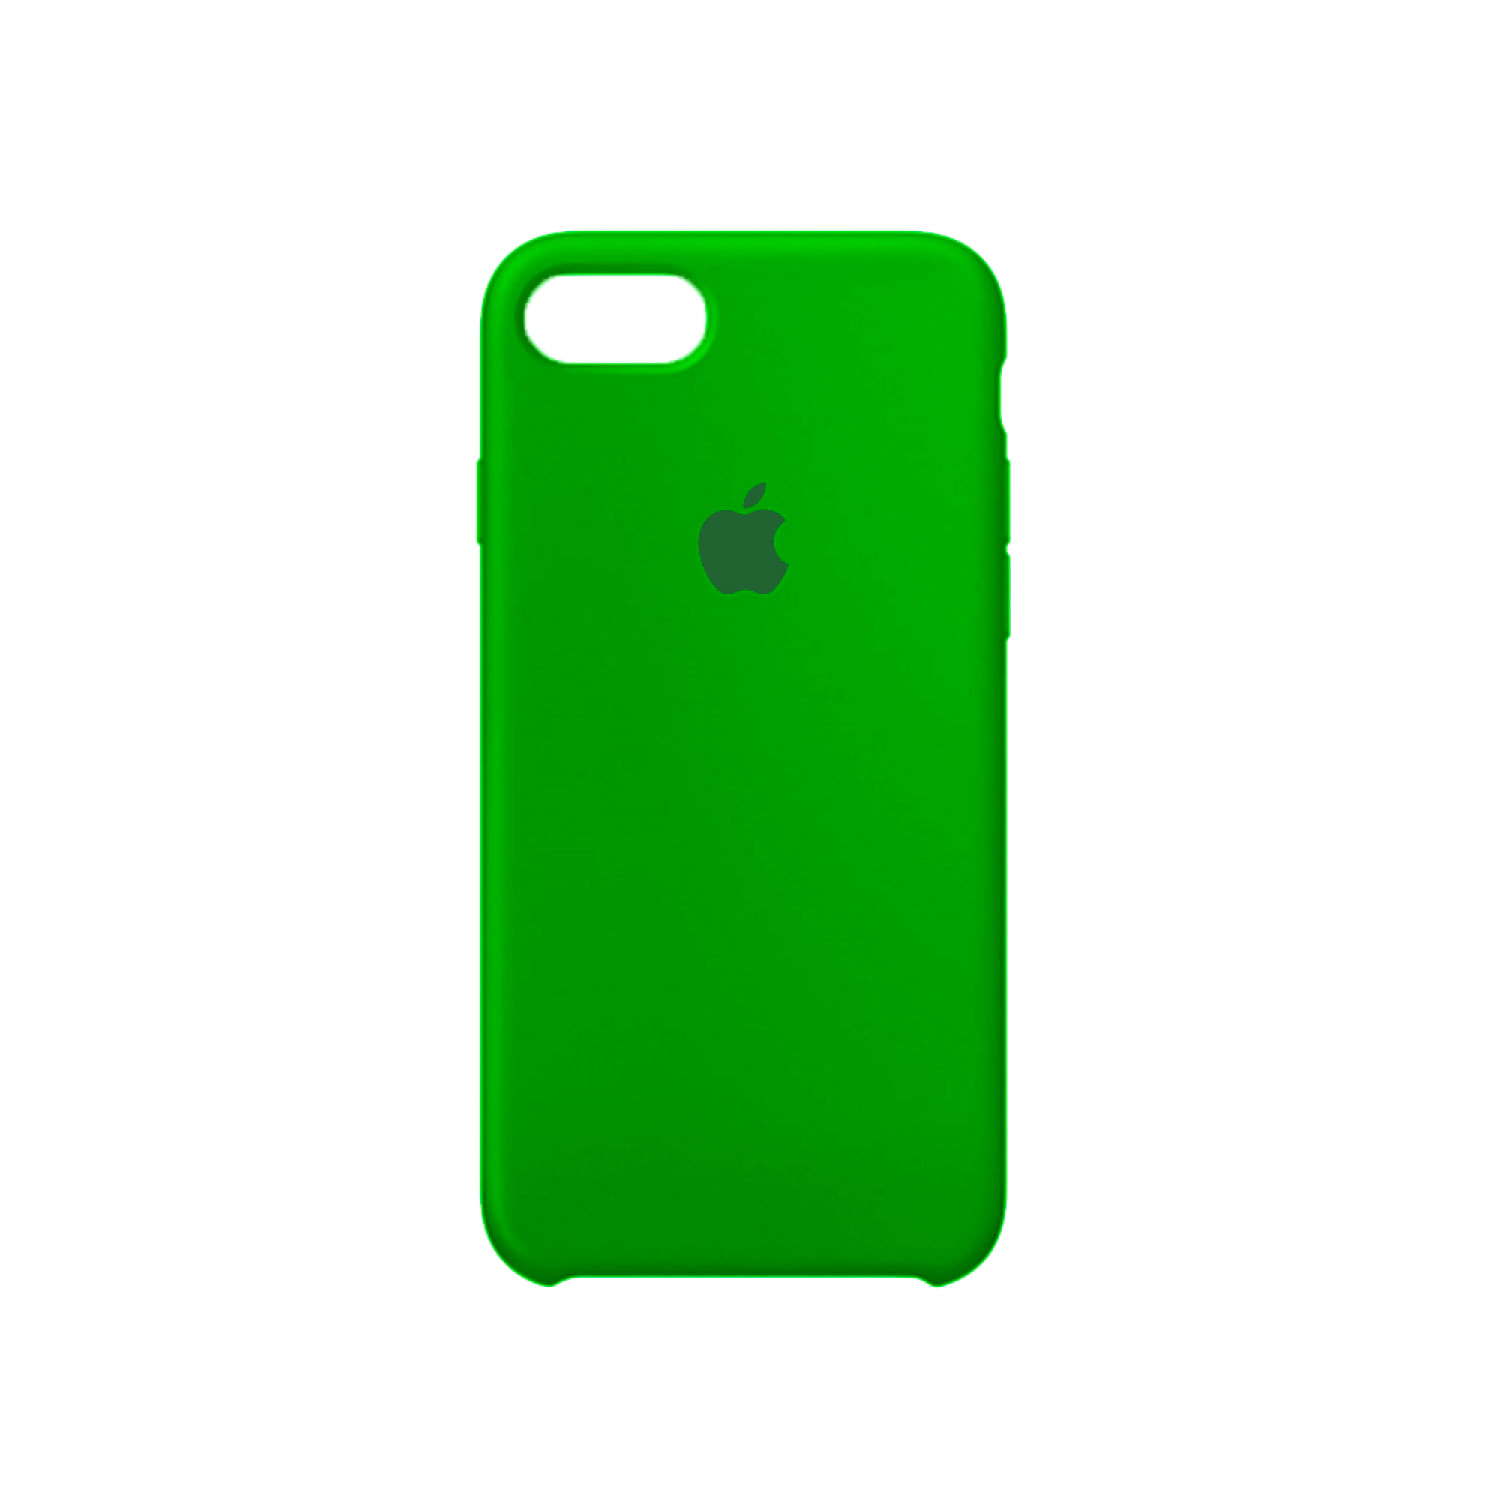 Case De Silicona Iphone 7 Verde